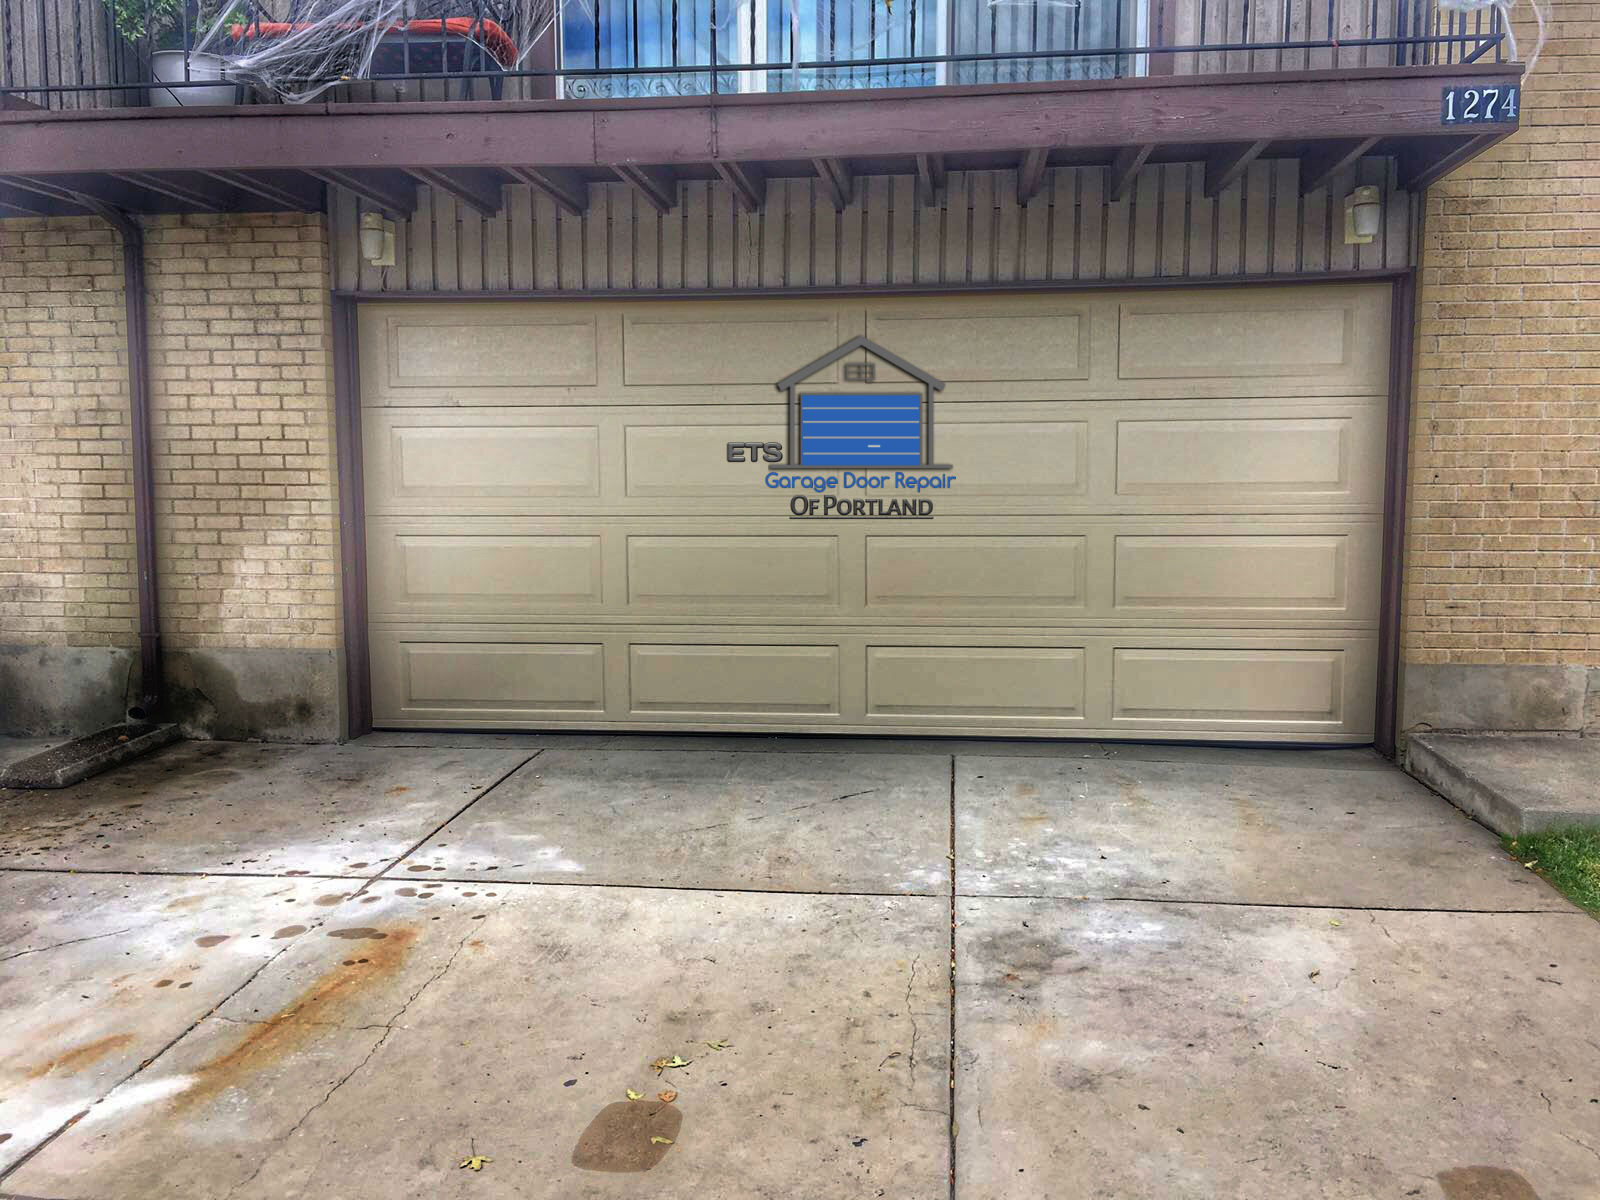 ETS Garage Door Repair Of Salem